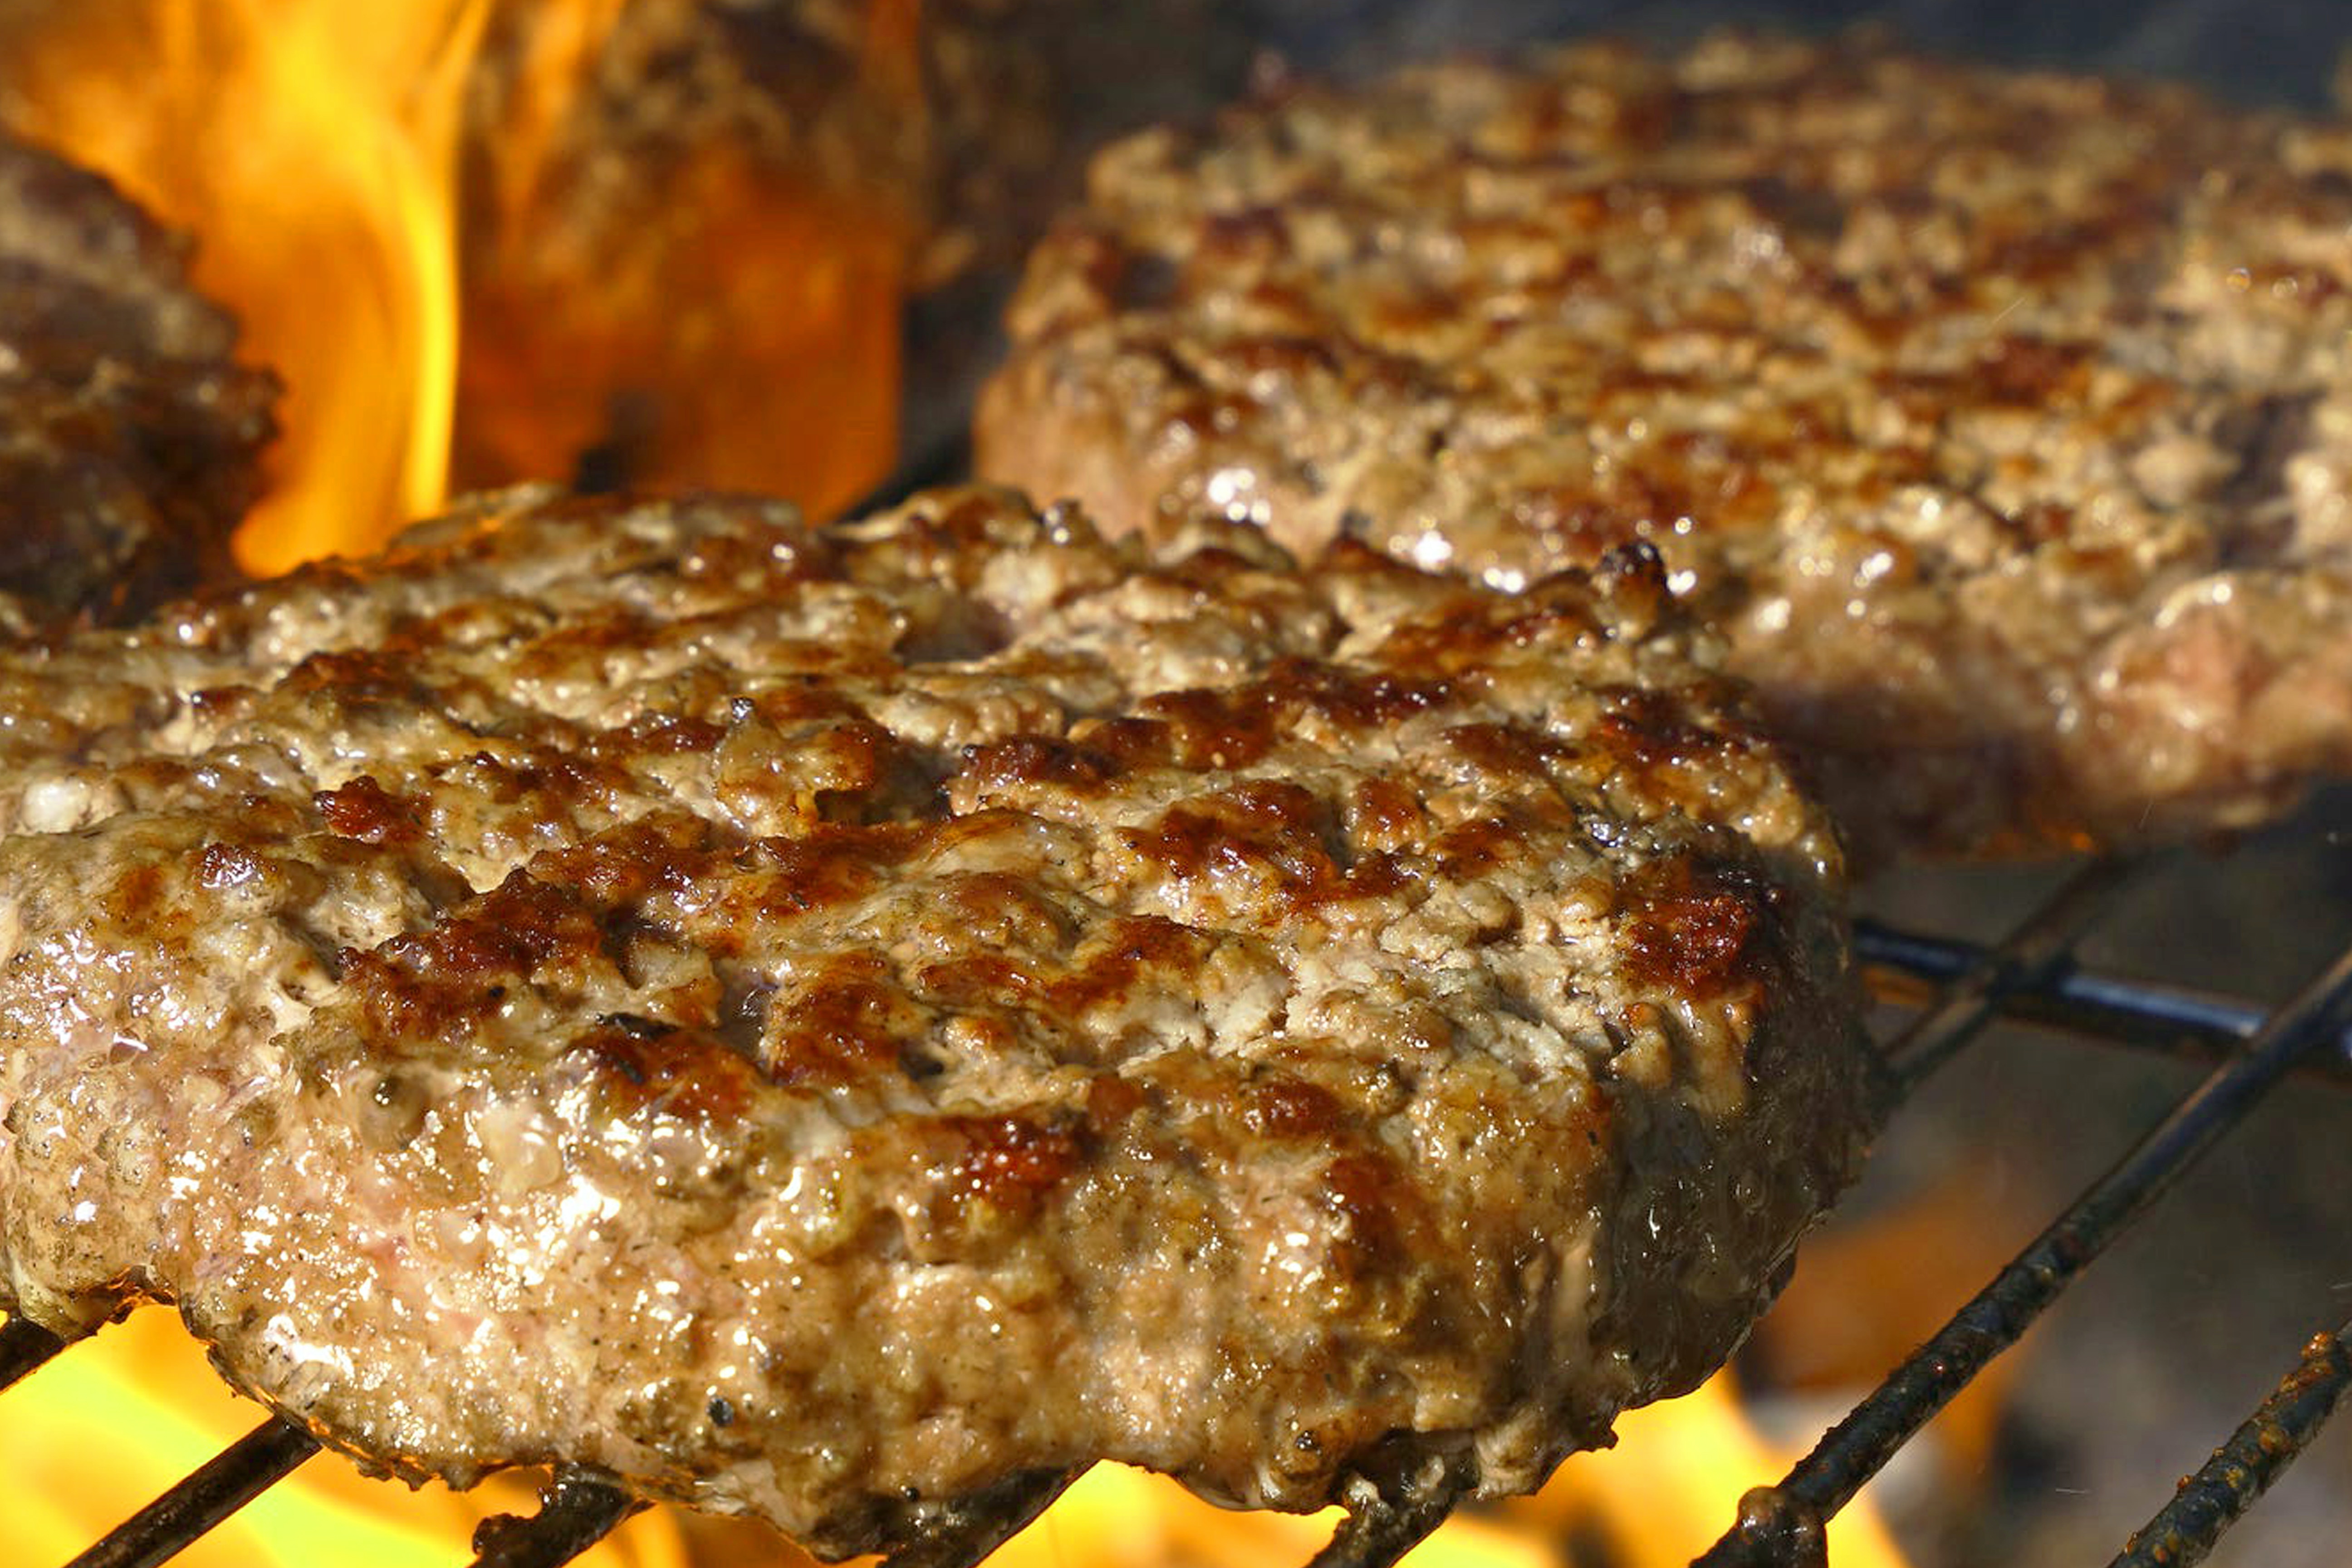 Receta: ¿Cómo preparar carne para hamburguesa artesanal, jugosa y  deliciosa? | EL ESPECTADOR